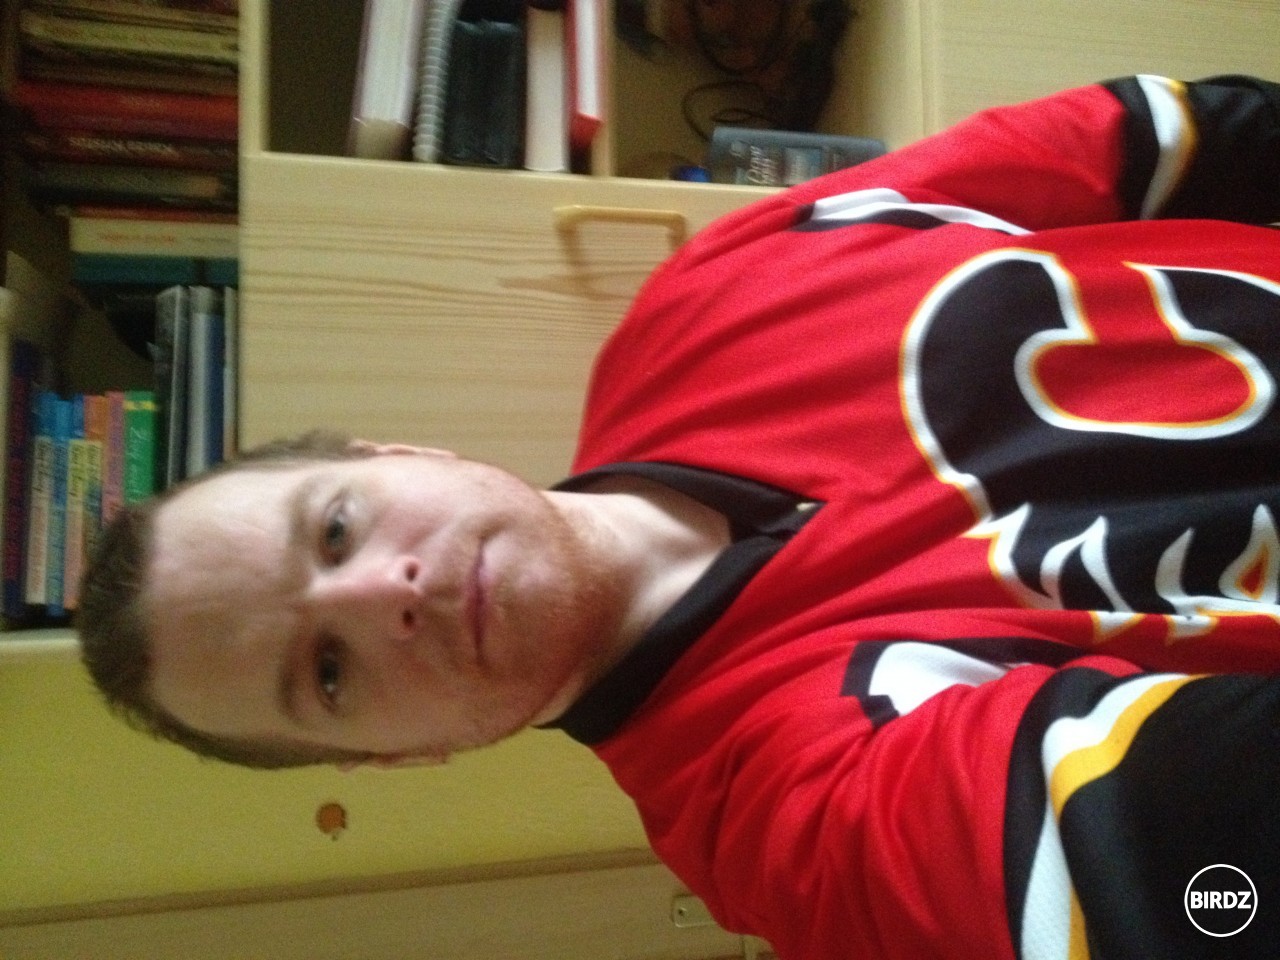 birdz sproste neotáča obrázok napriek tomu že je uložený správne. ja v Calgary Flames krátko po drafte do NHL :D